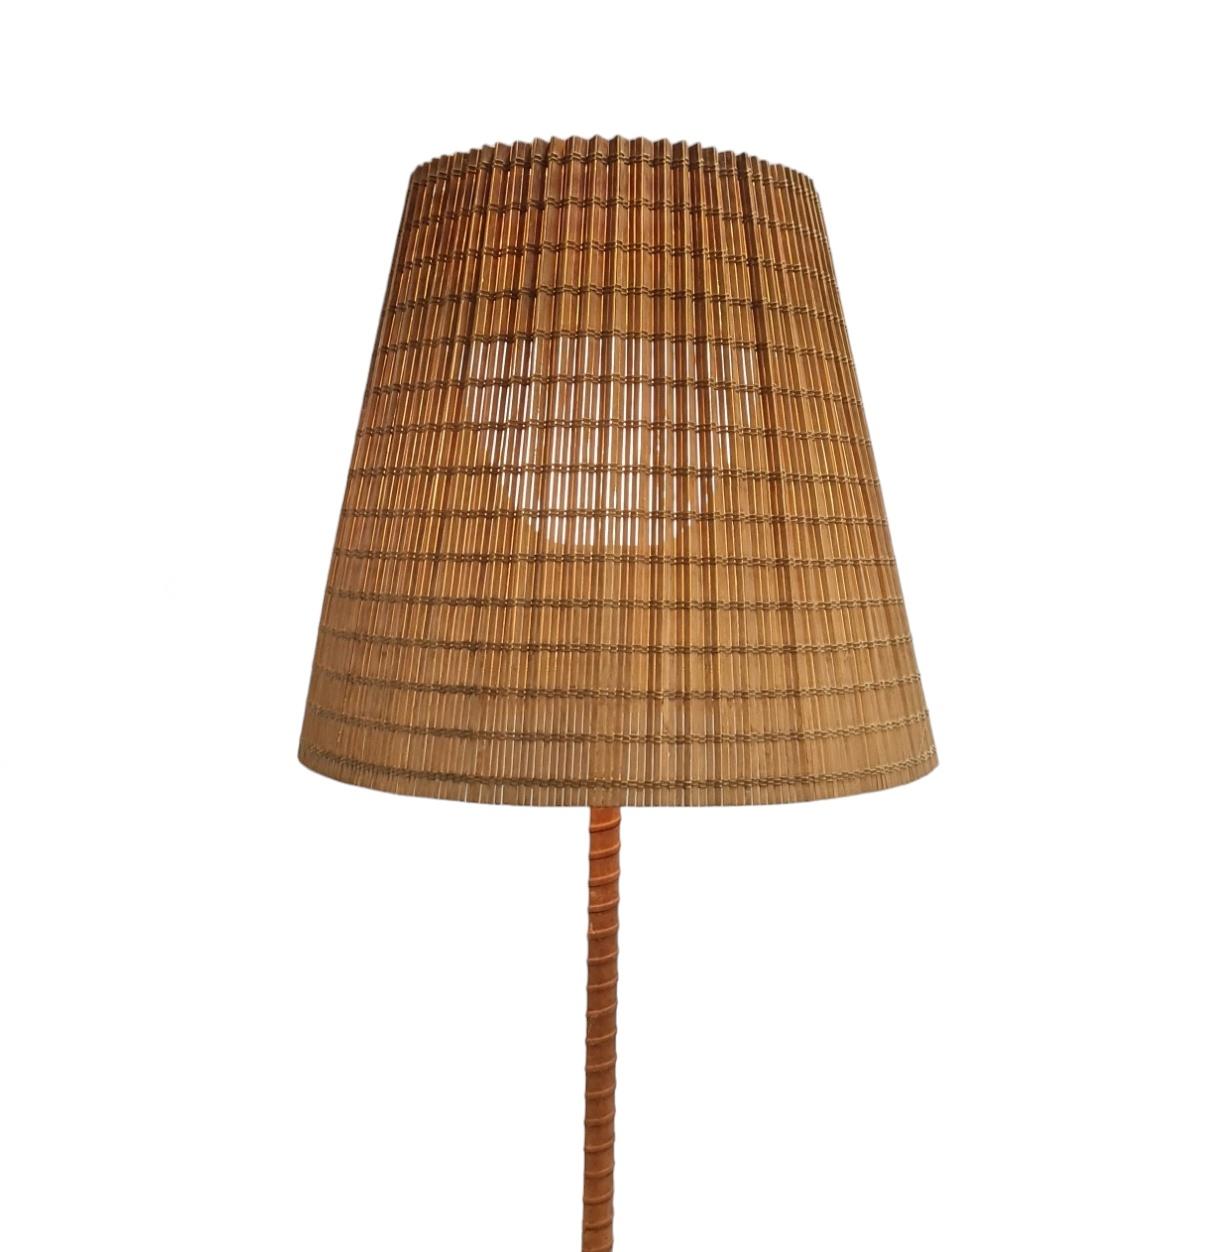 Finnish Lisa Johansson-Papé Ihanne Floor Lamp, Orno for Stockmann 1960s For Sale